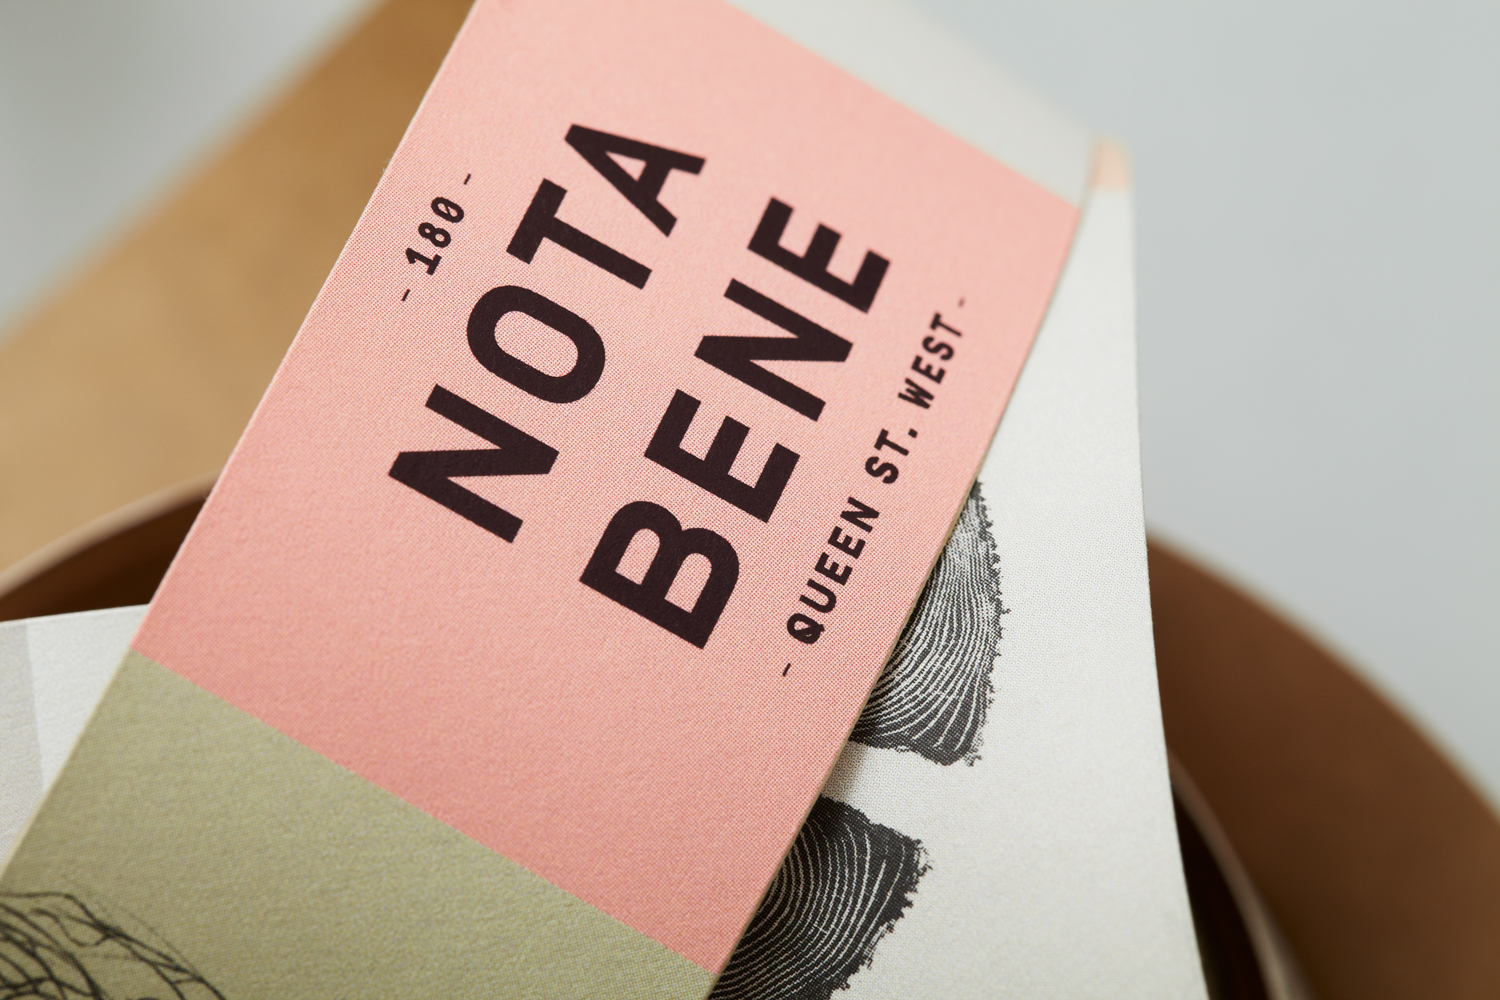 Print design for Nota Bene by Blok